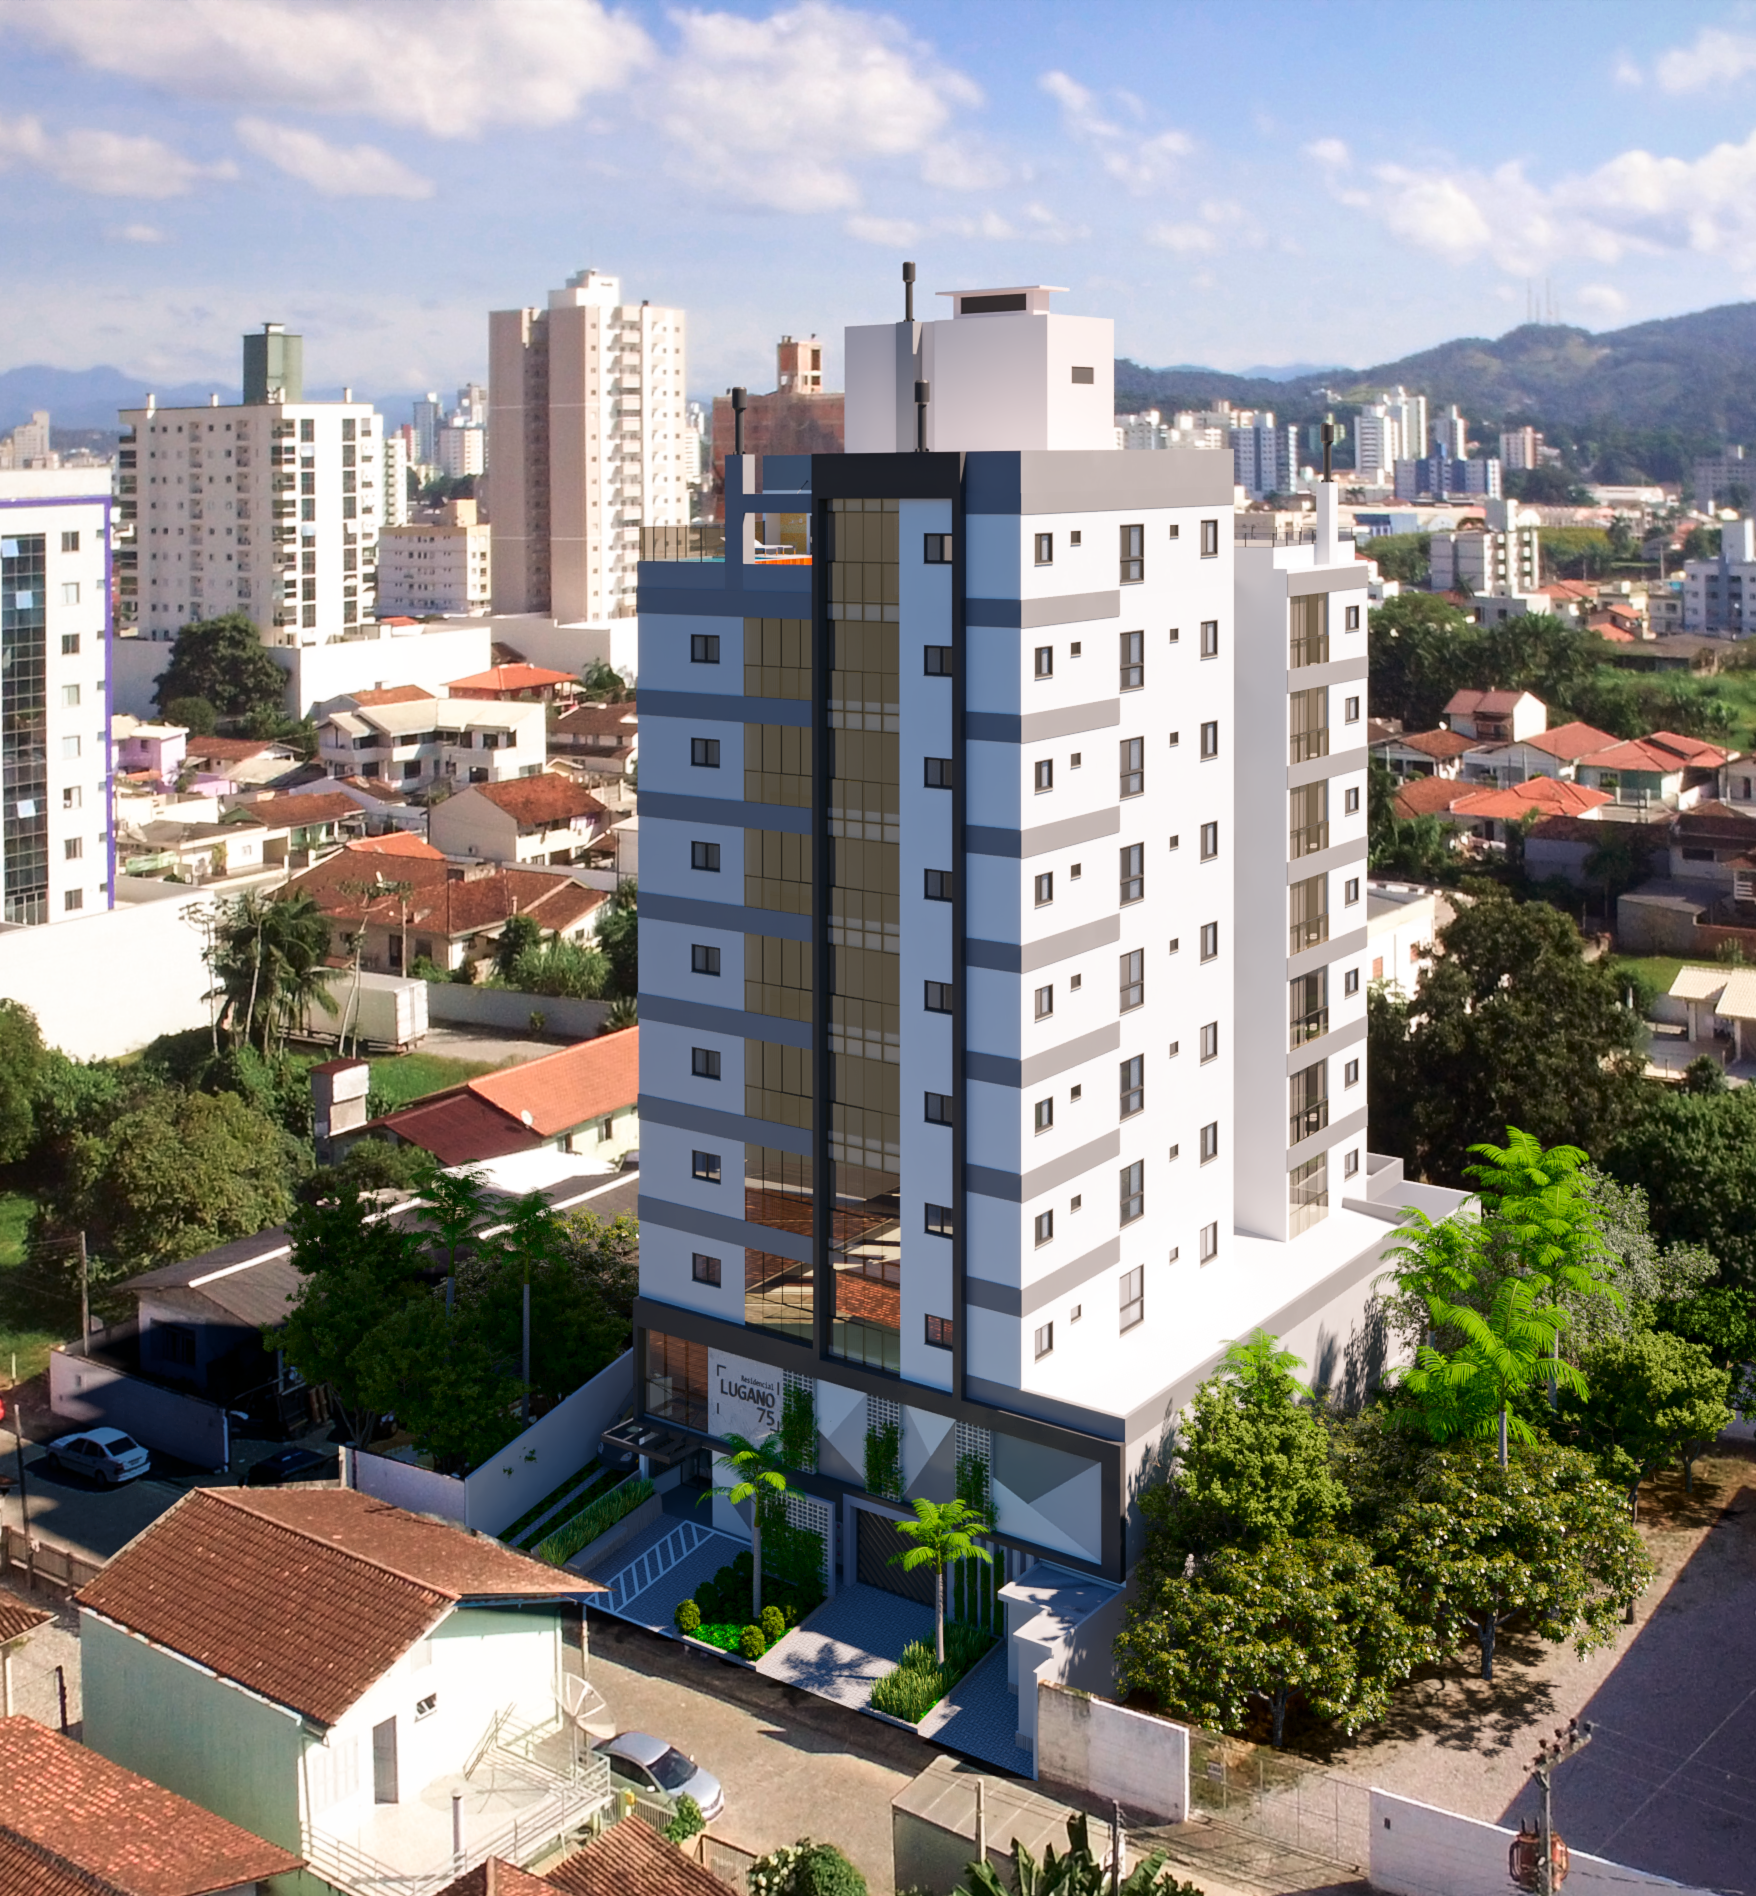 Apartamento à Venda em Santa Rita - Brusque - Santa Catarina - Residencial LUGANO em Brusque